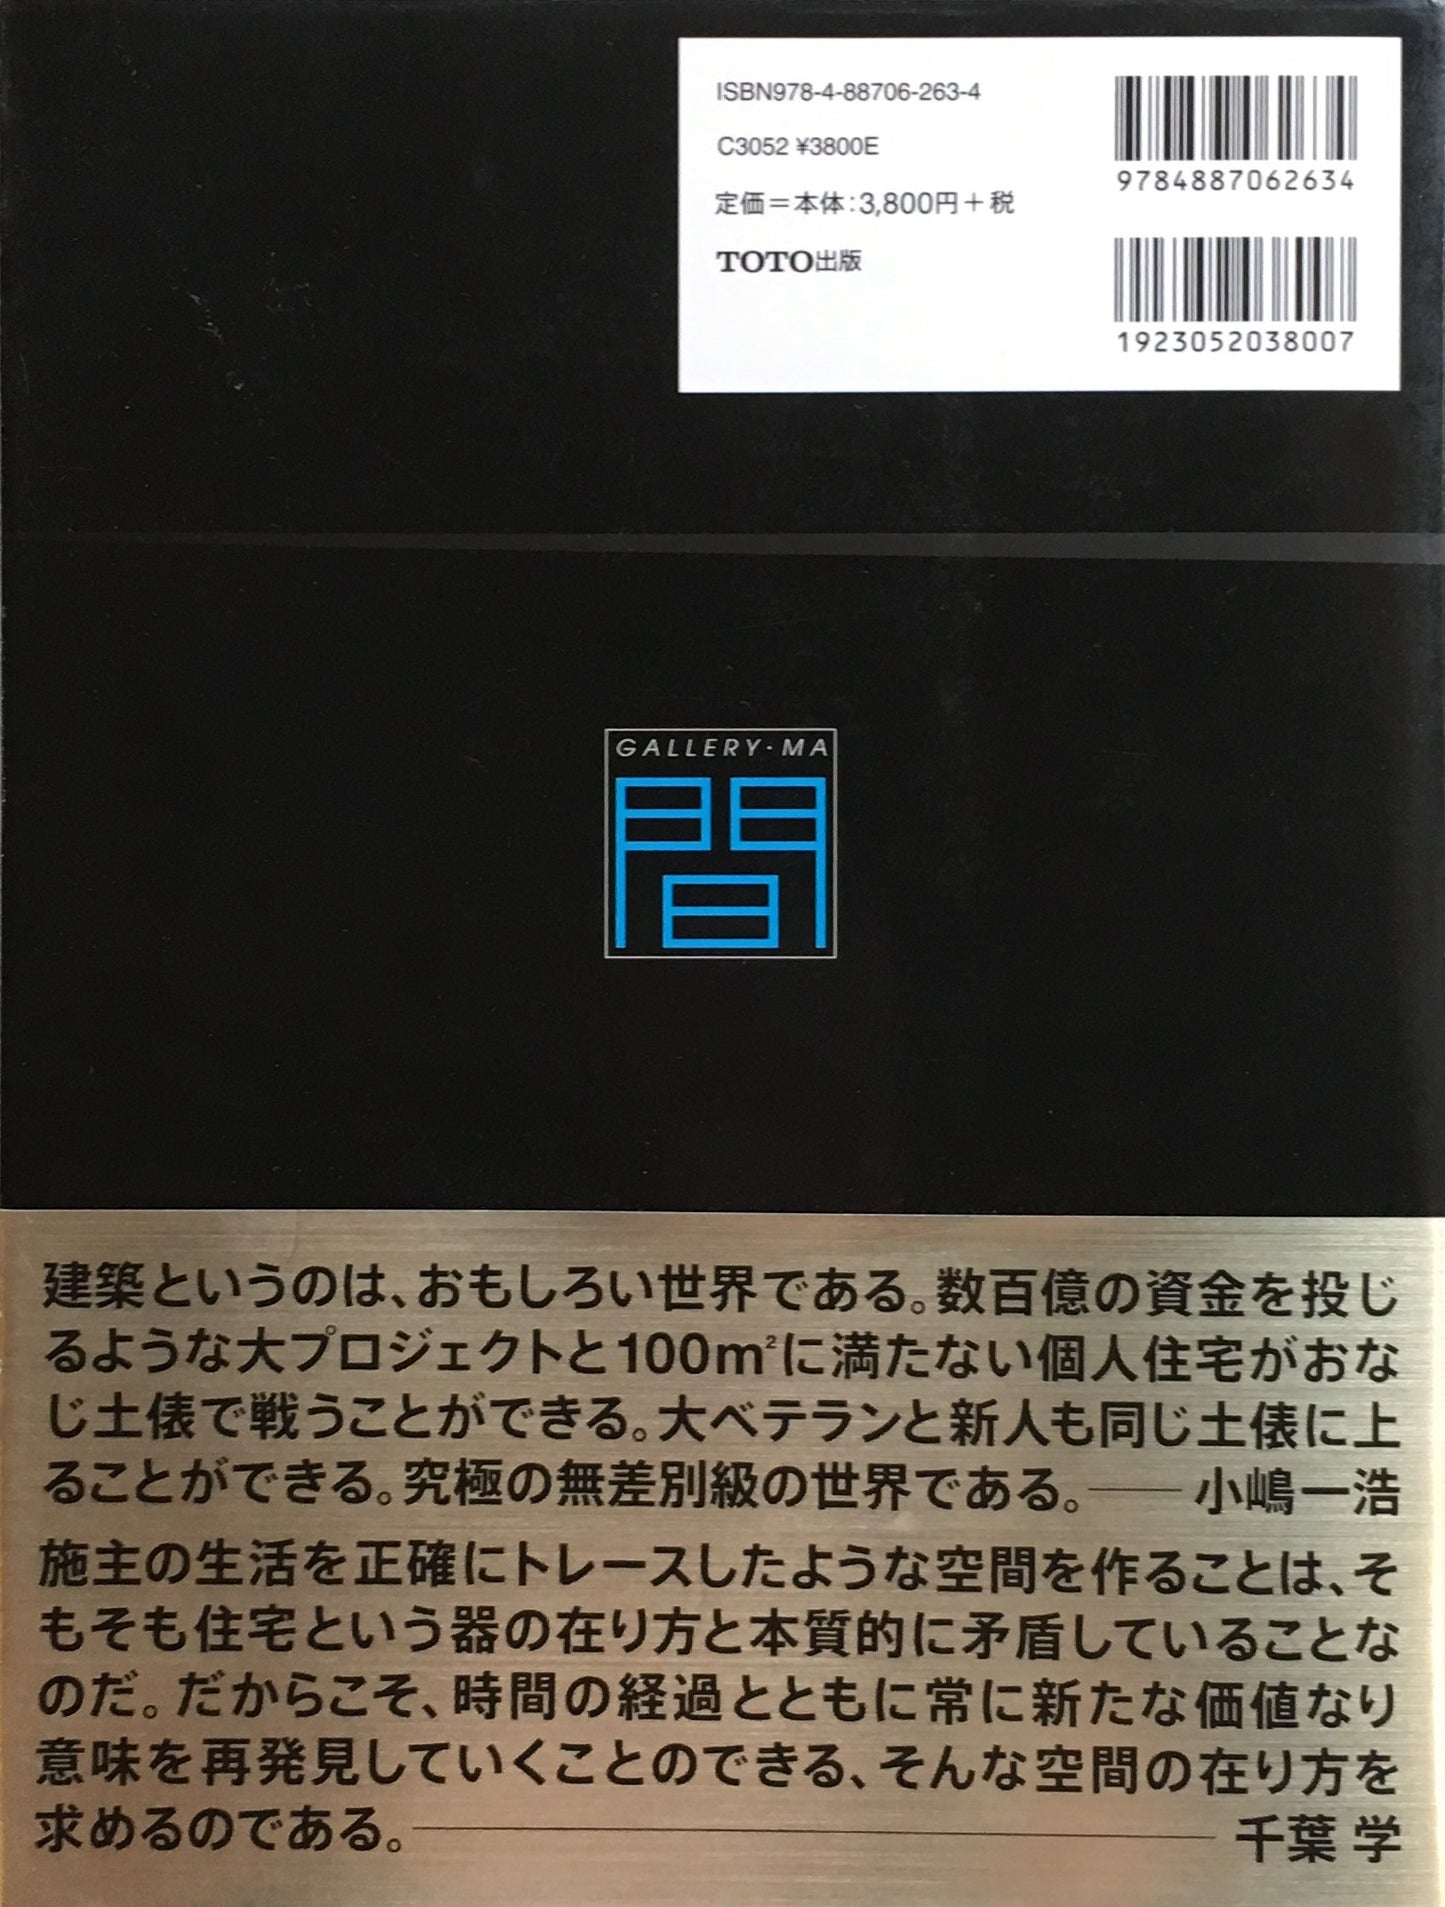 日本の現代住宅　1985‐2005　ギャラリー・間20周年記念出版